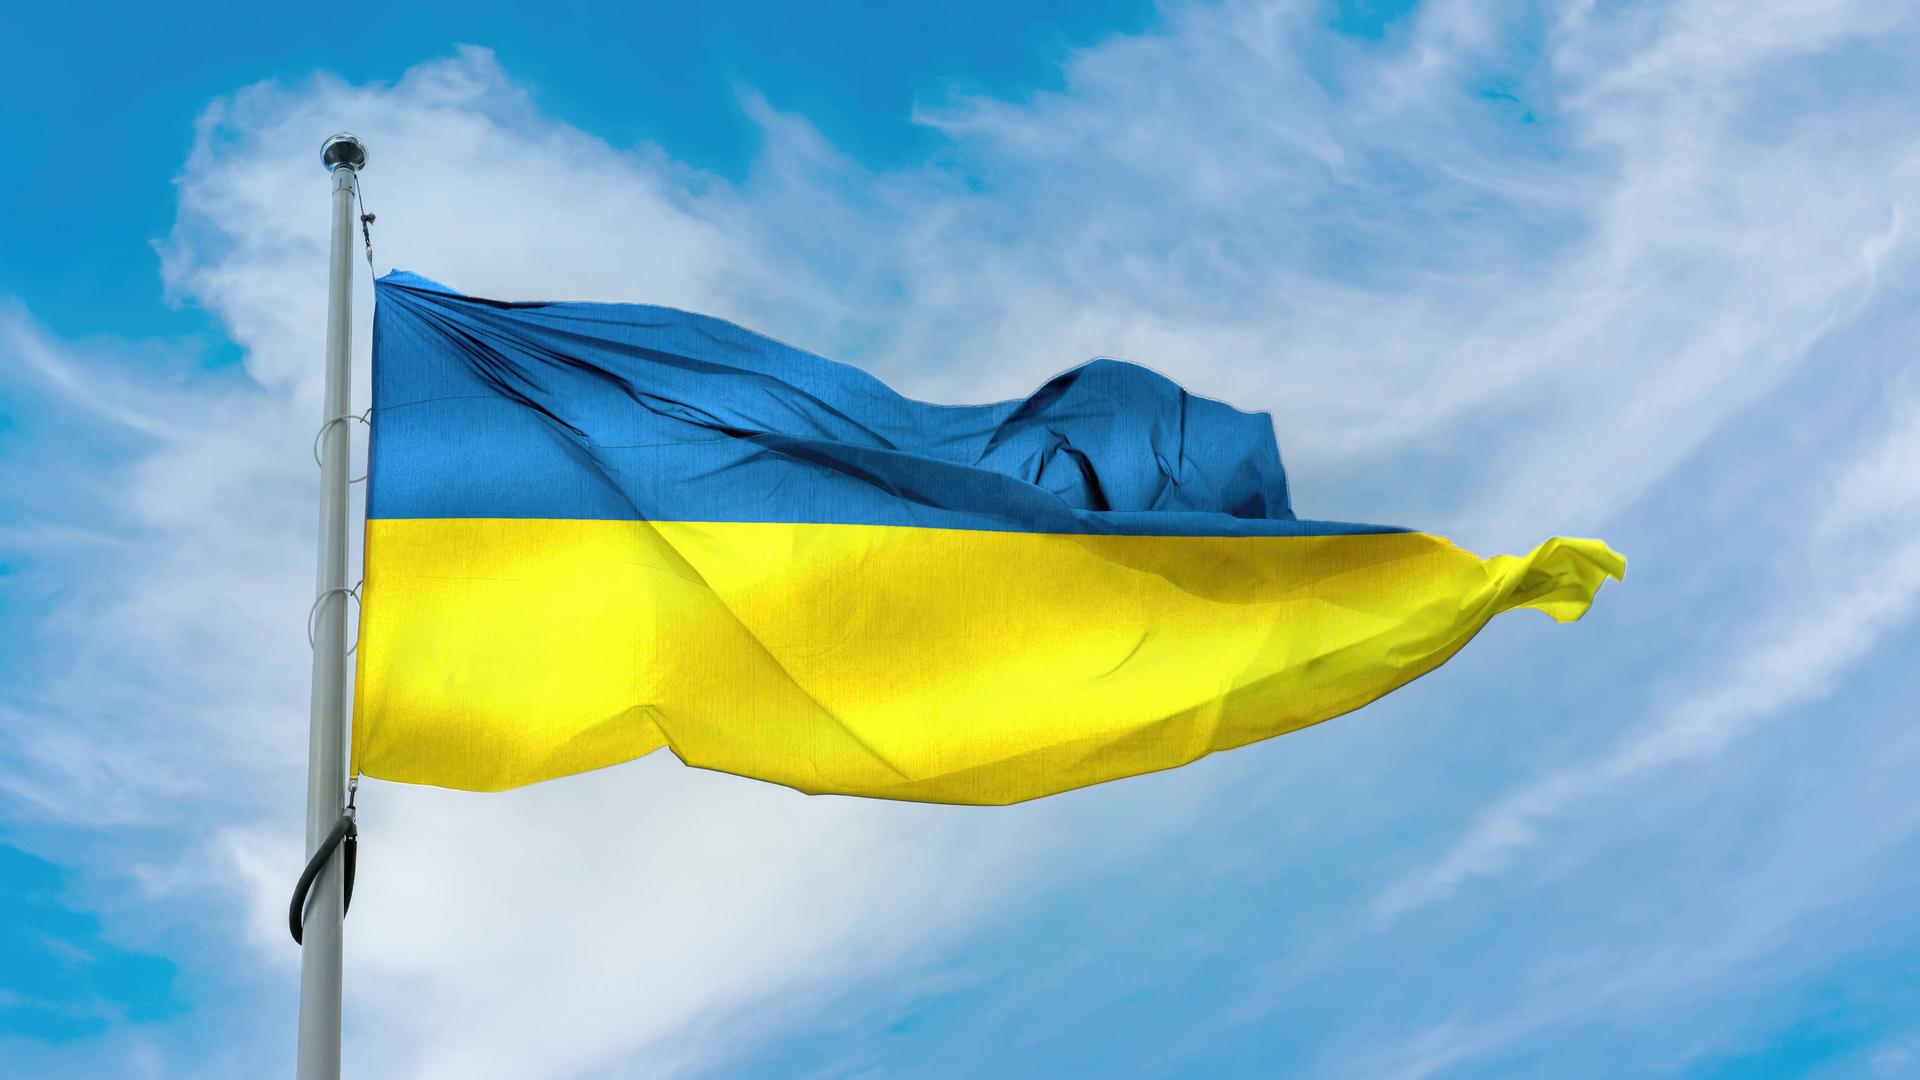 Wir sehen die ukrainische Flagge mit ihren Farben Blau und Gelb. 